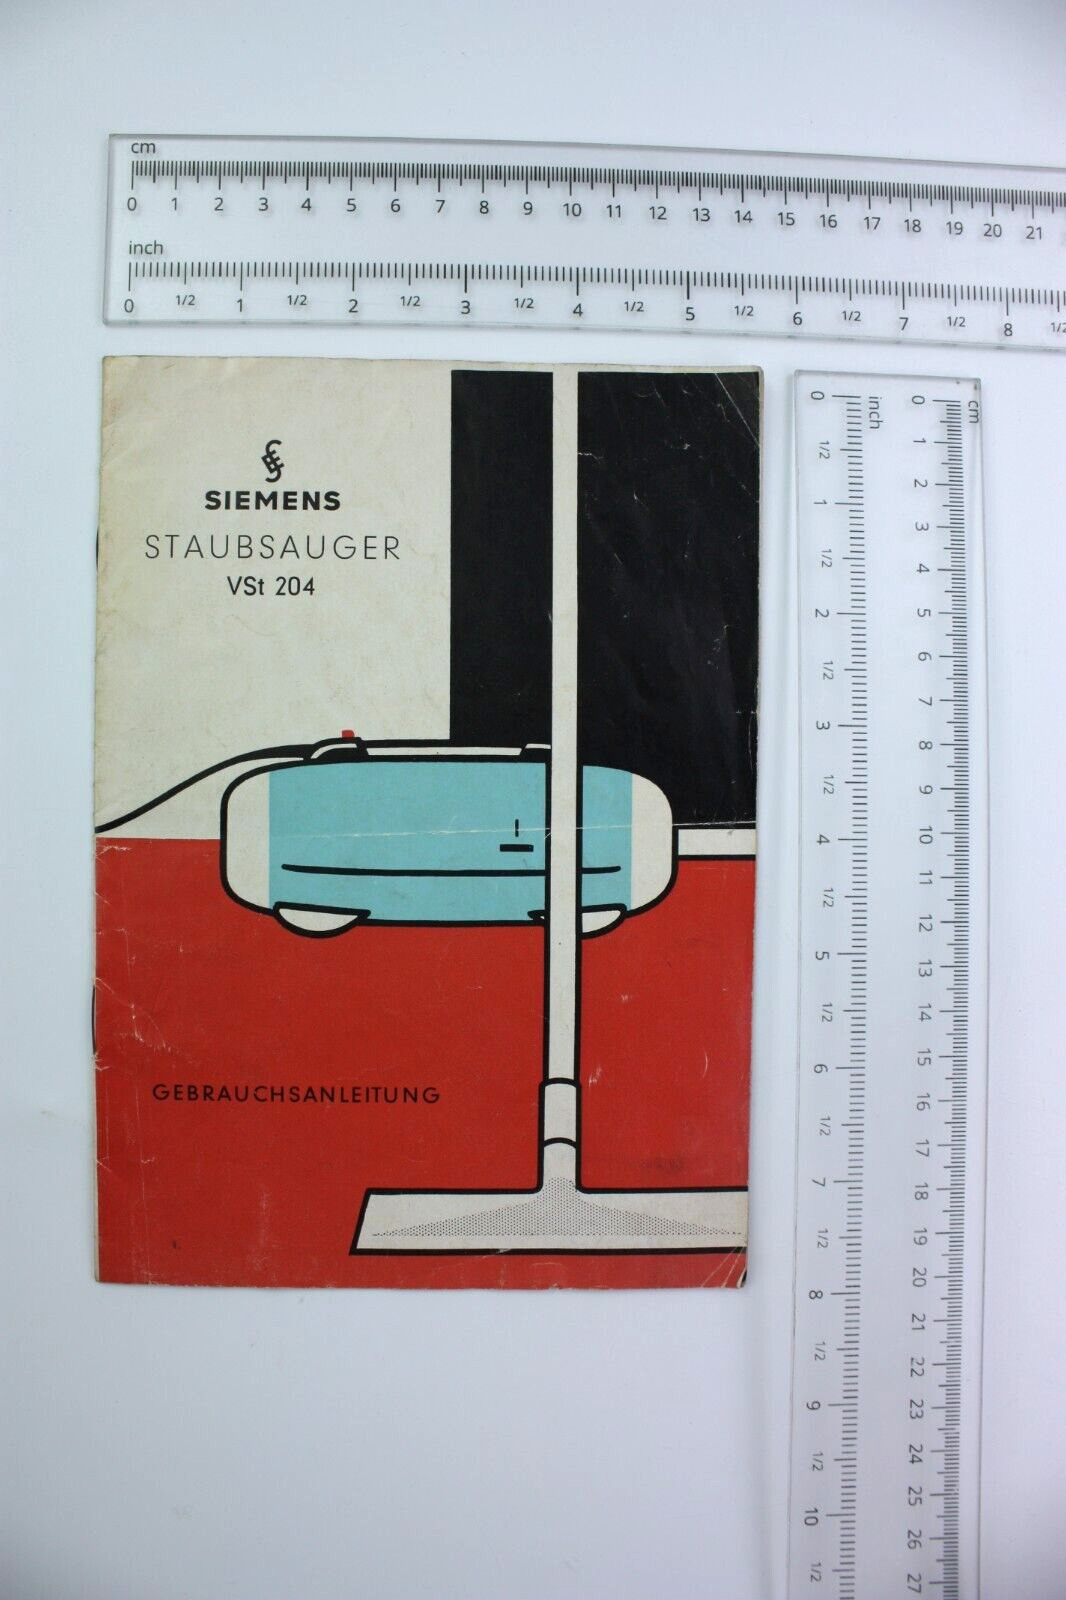 SIEMENS VACUUM CLEANER German User's Manual 1970s STAUBSAUGER VST 204